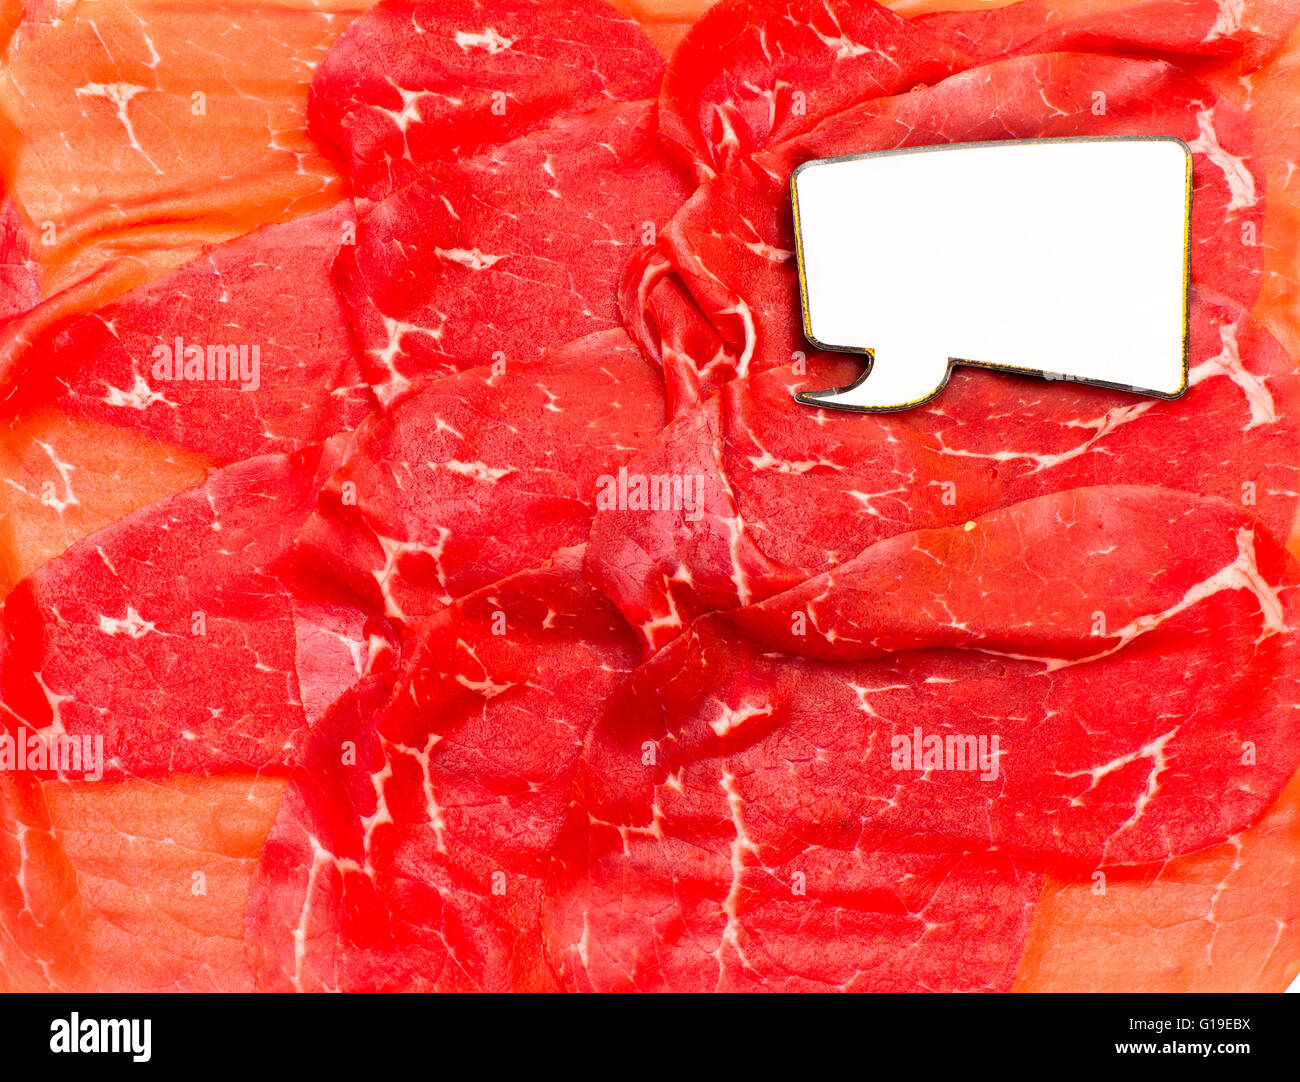 Parler des aliments : Viande rouge tranches de bresaola avec étiquette bd blanc Banque D'Images